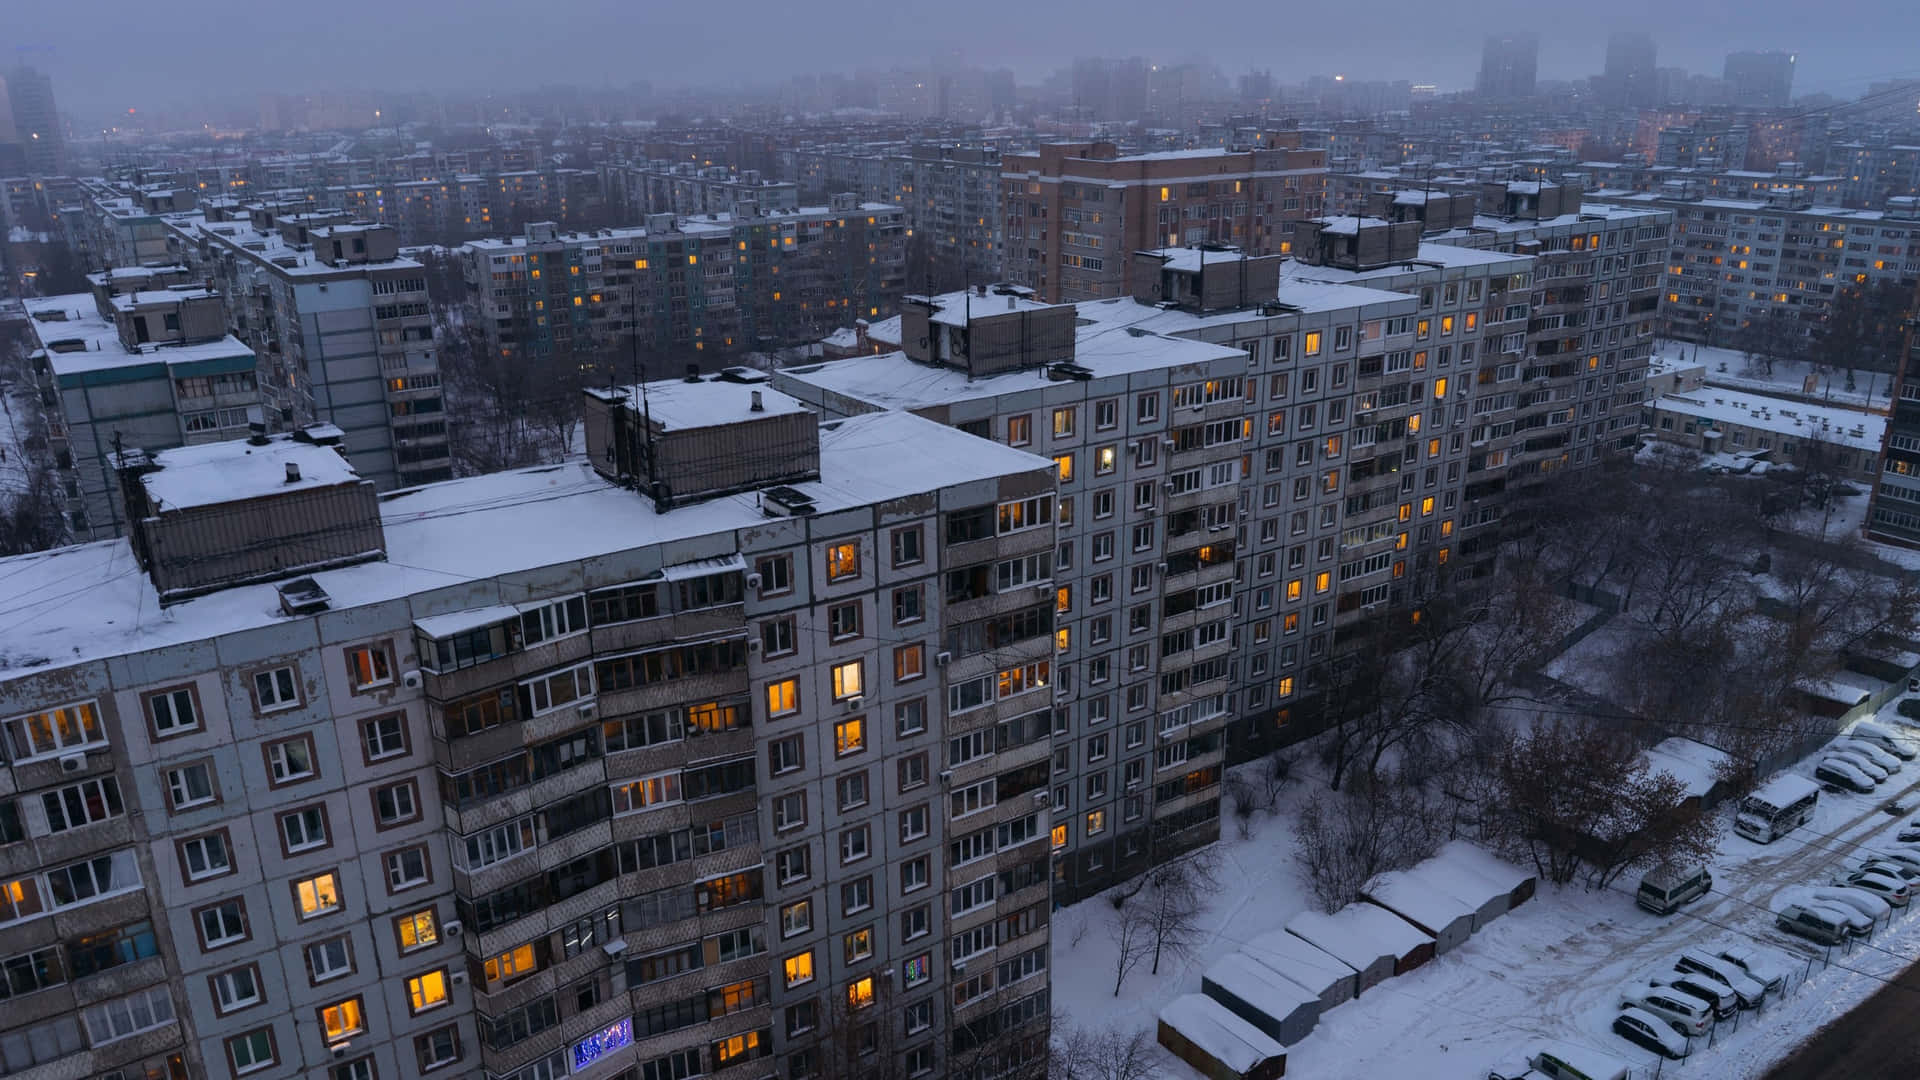 Impresionantemaravilla Invernal En Moscú, Rusia Fondo de pantalla